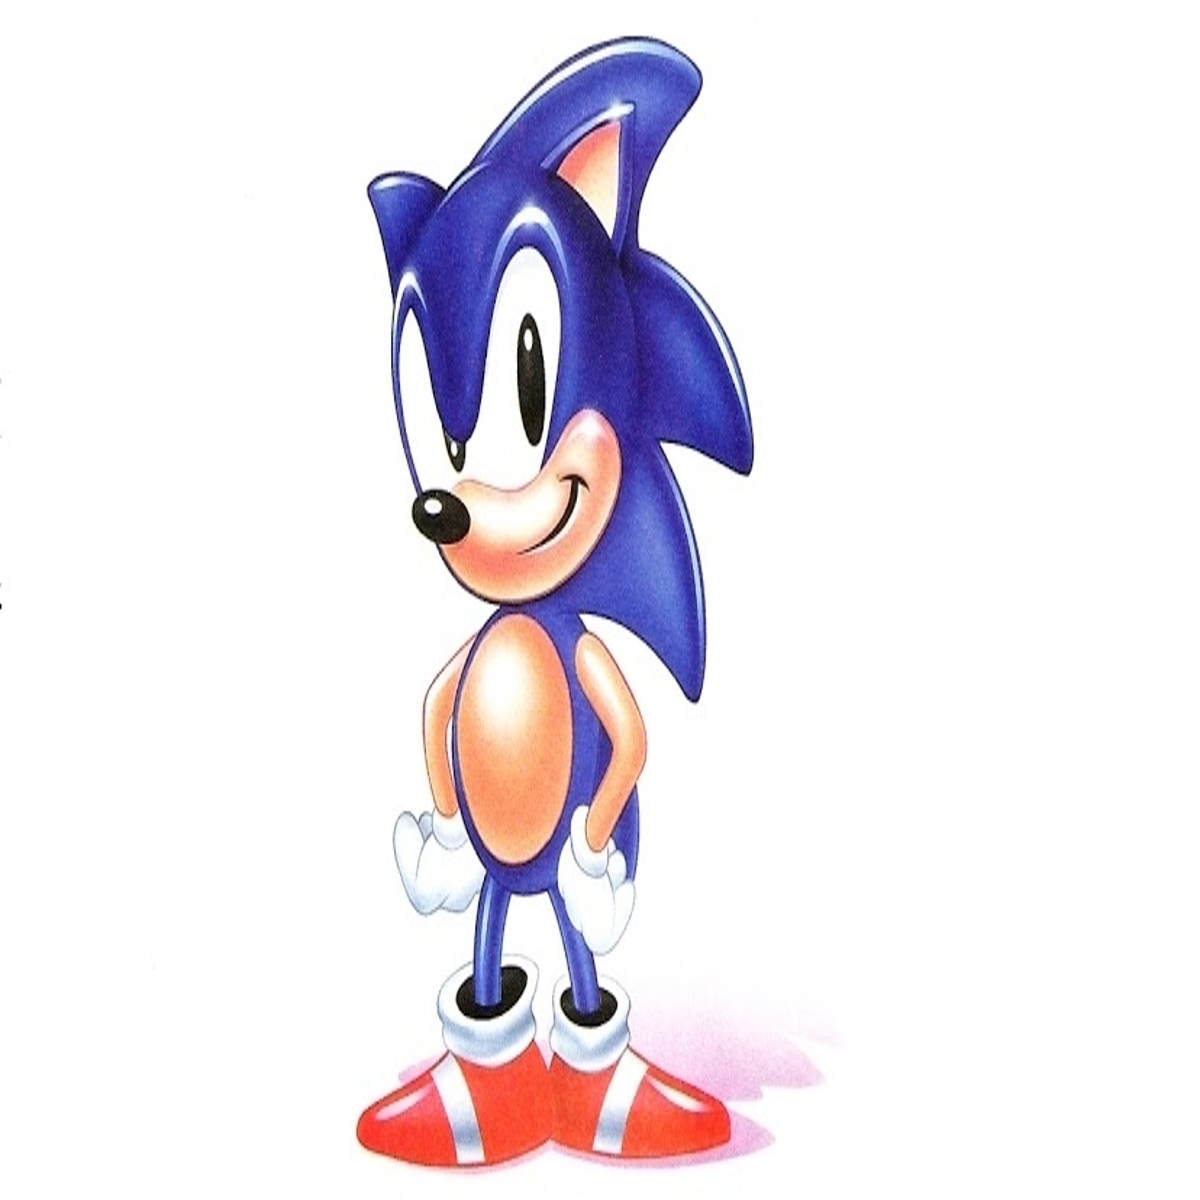 Grátis! Sonic Mania e Horizon Chase Turbo estão sendo distribuídos na Epic  Store 